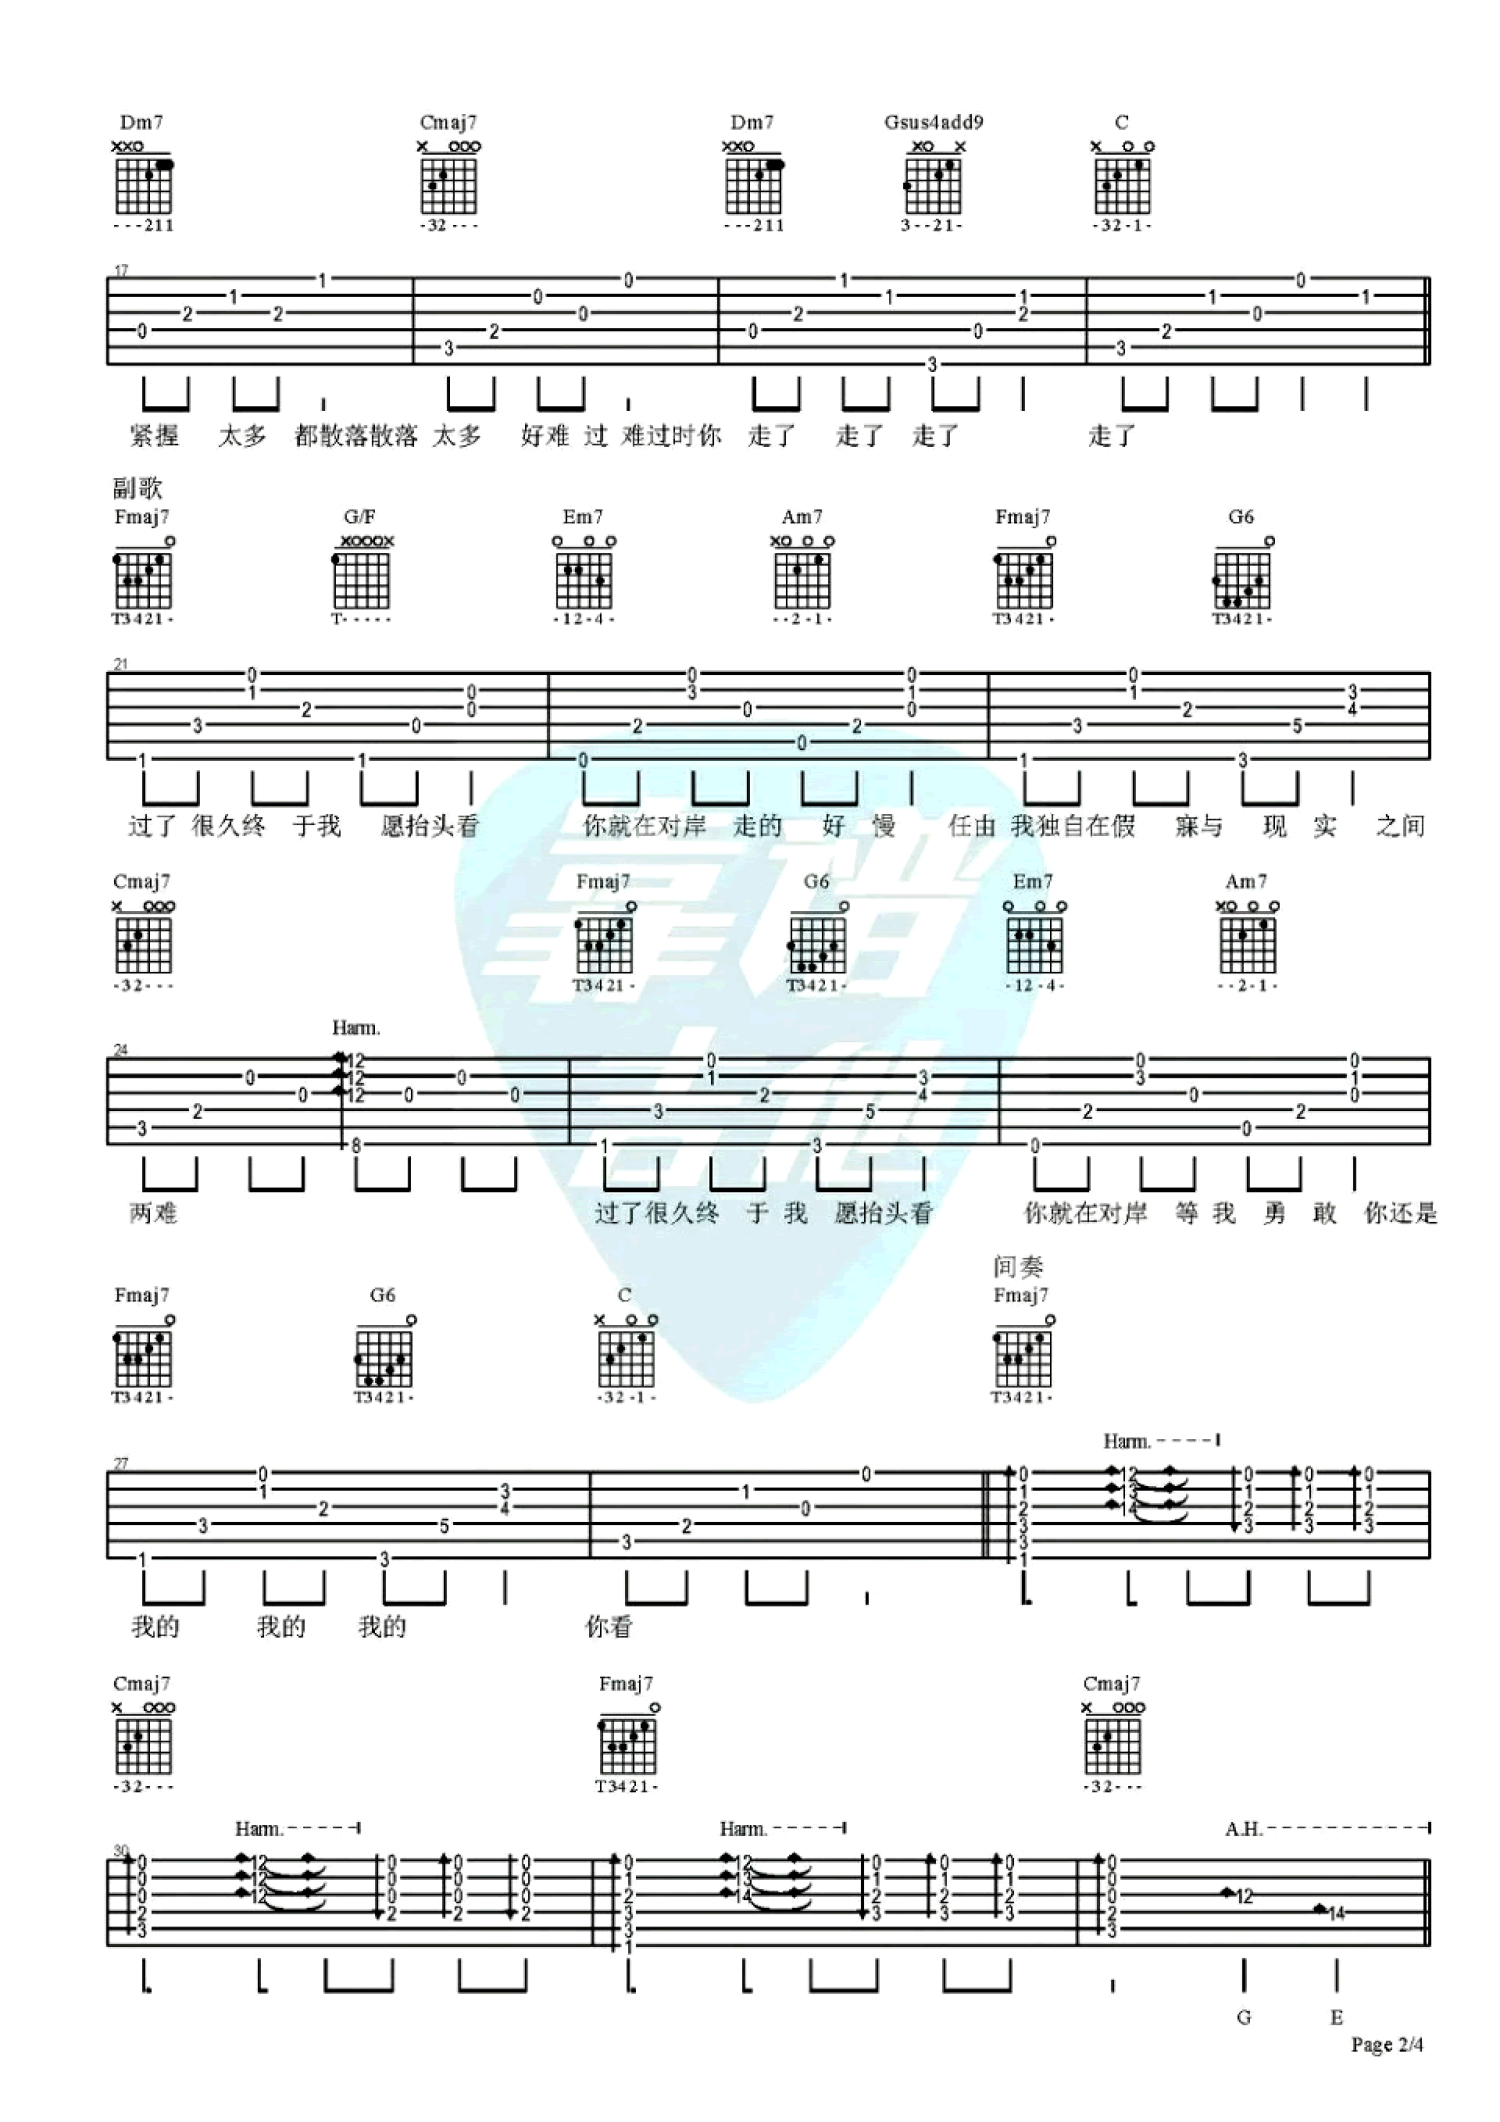 陈粒 - 走马(指弹独奏带指法提示 雨众同乐制谱) [指弹 独奏] 吉他谱